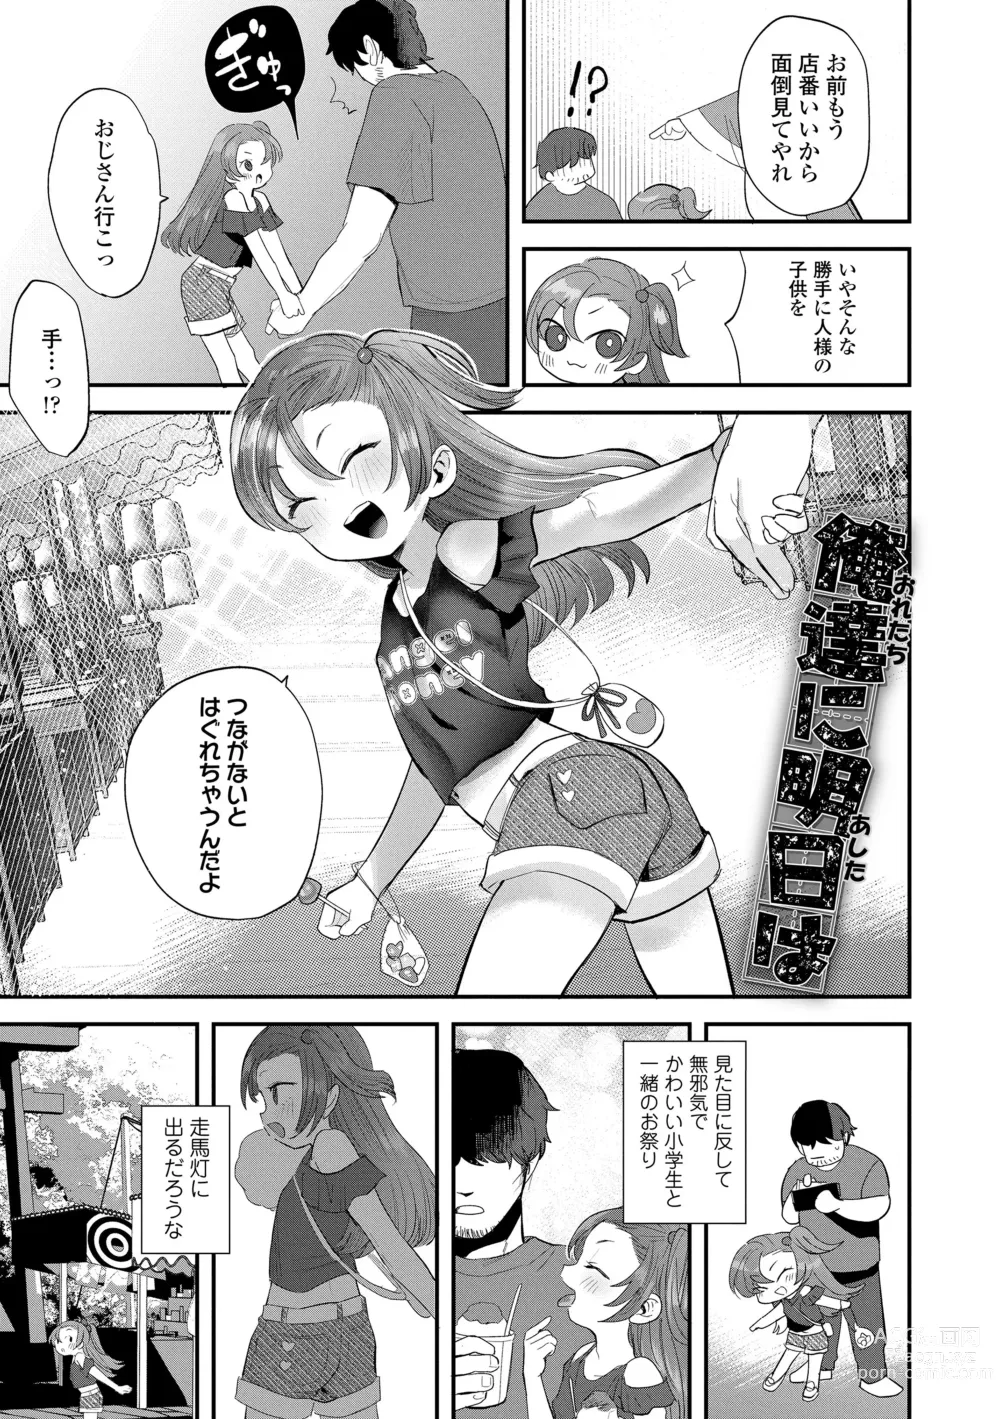 Page 7 of manga Chisanakonokoi